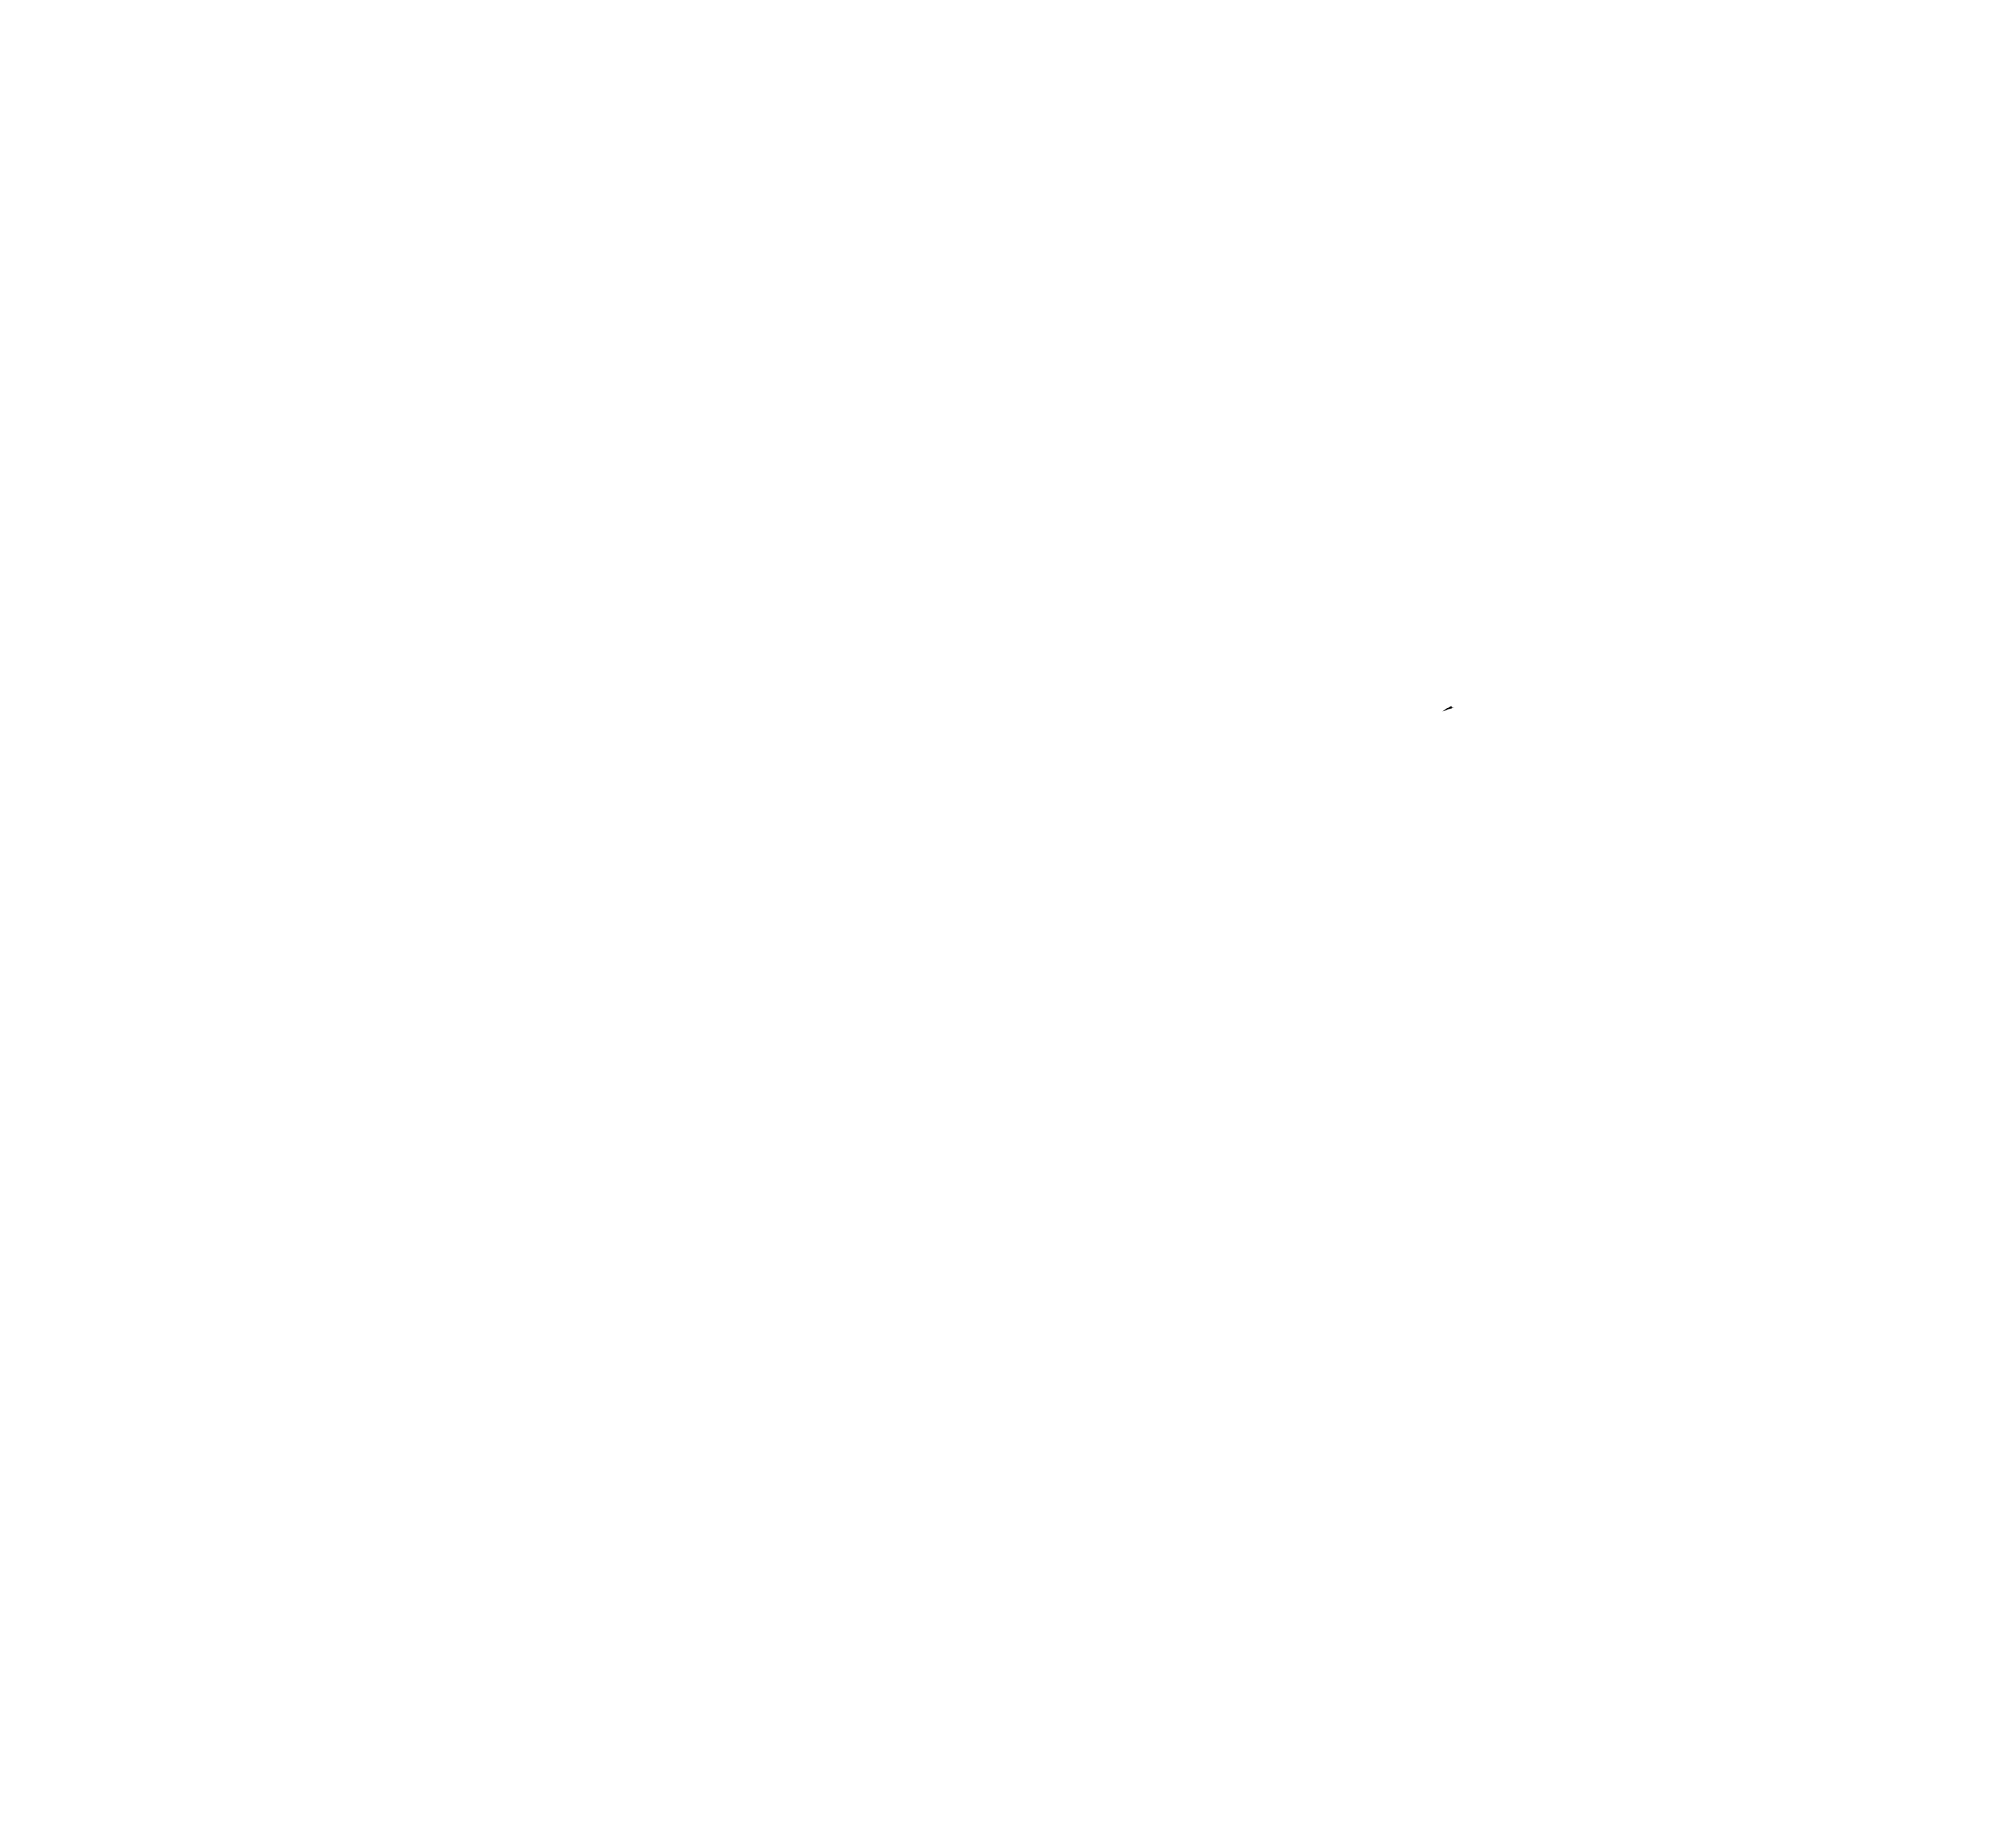 Make Literary Magic